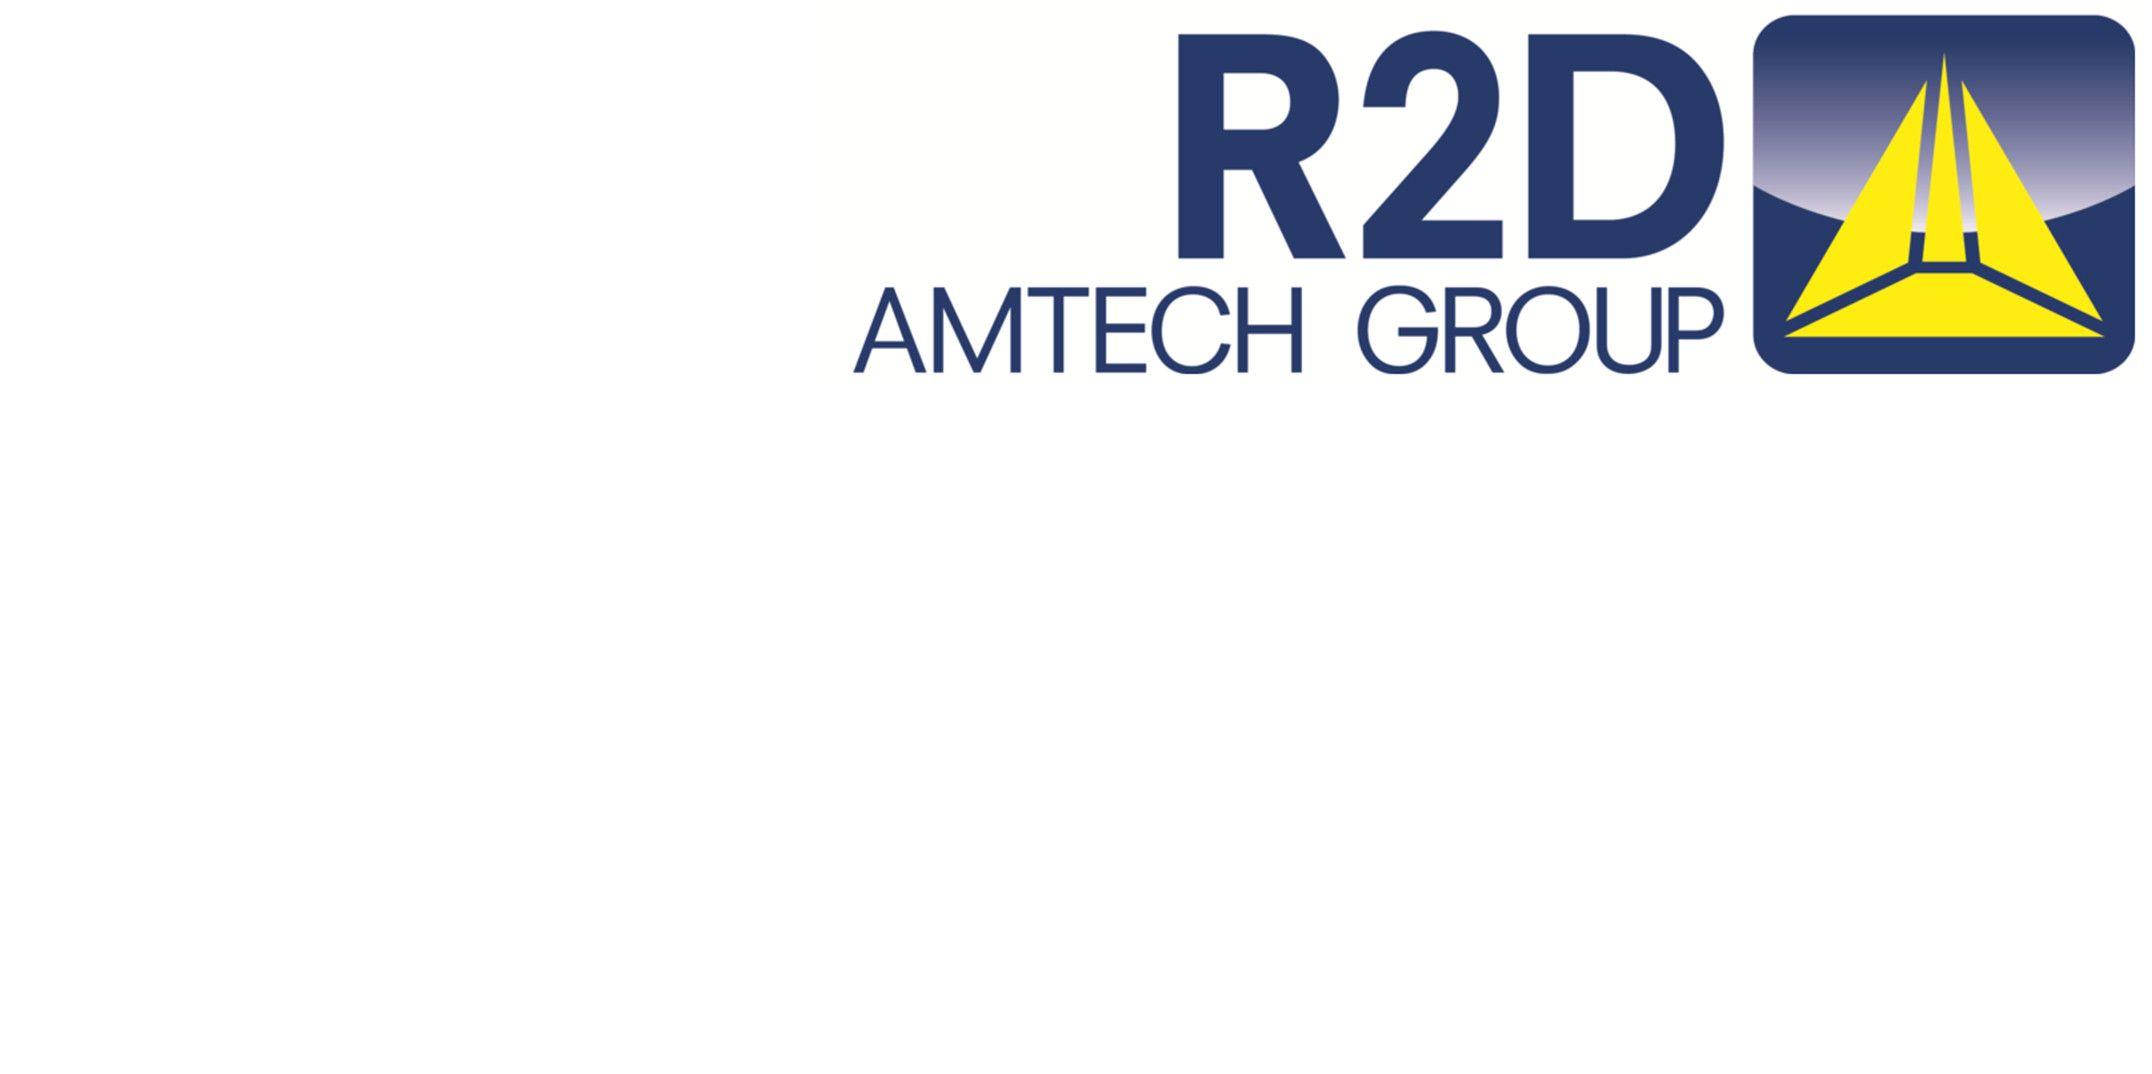 R2D Logo - R2D AUTOMATION | LinkedIn